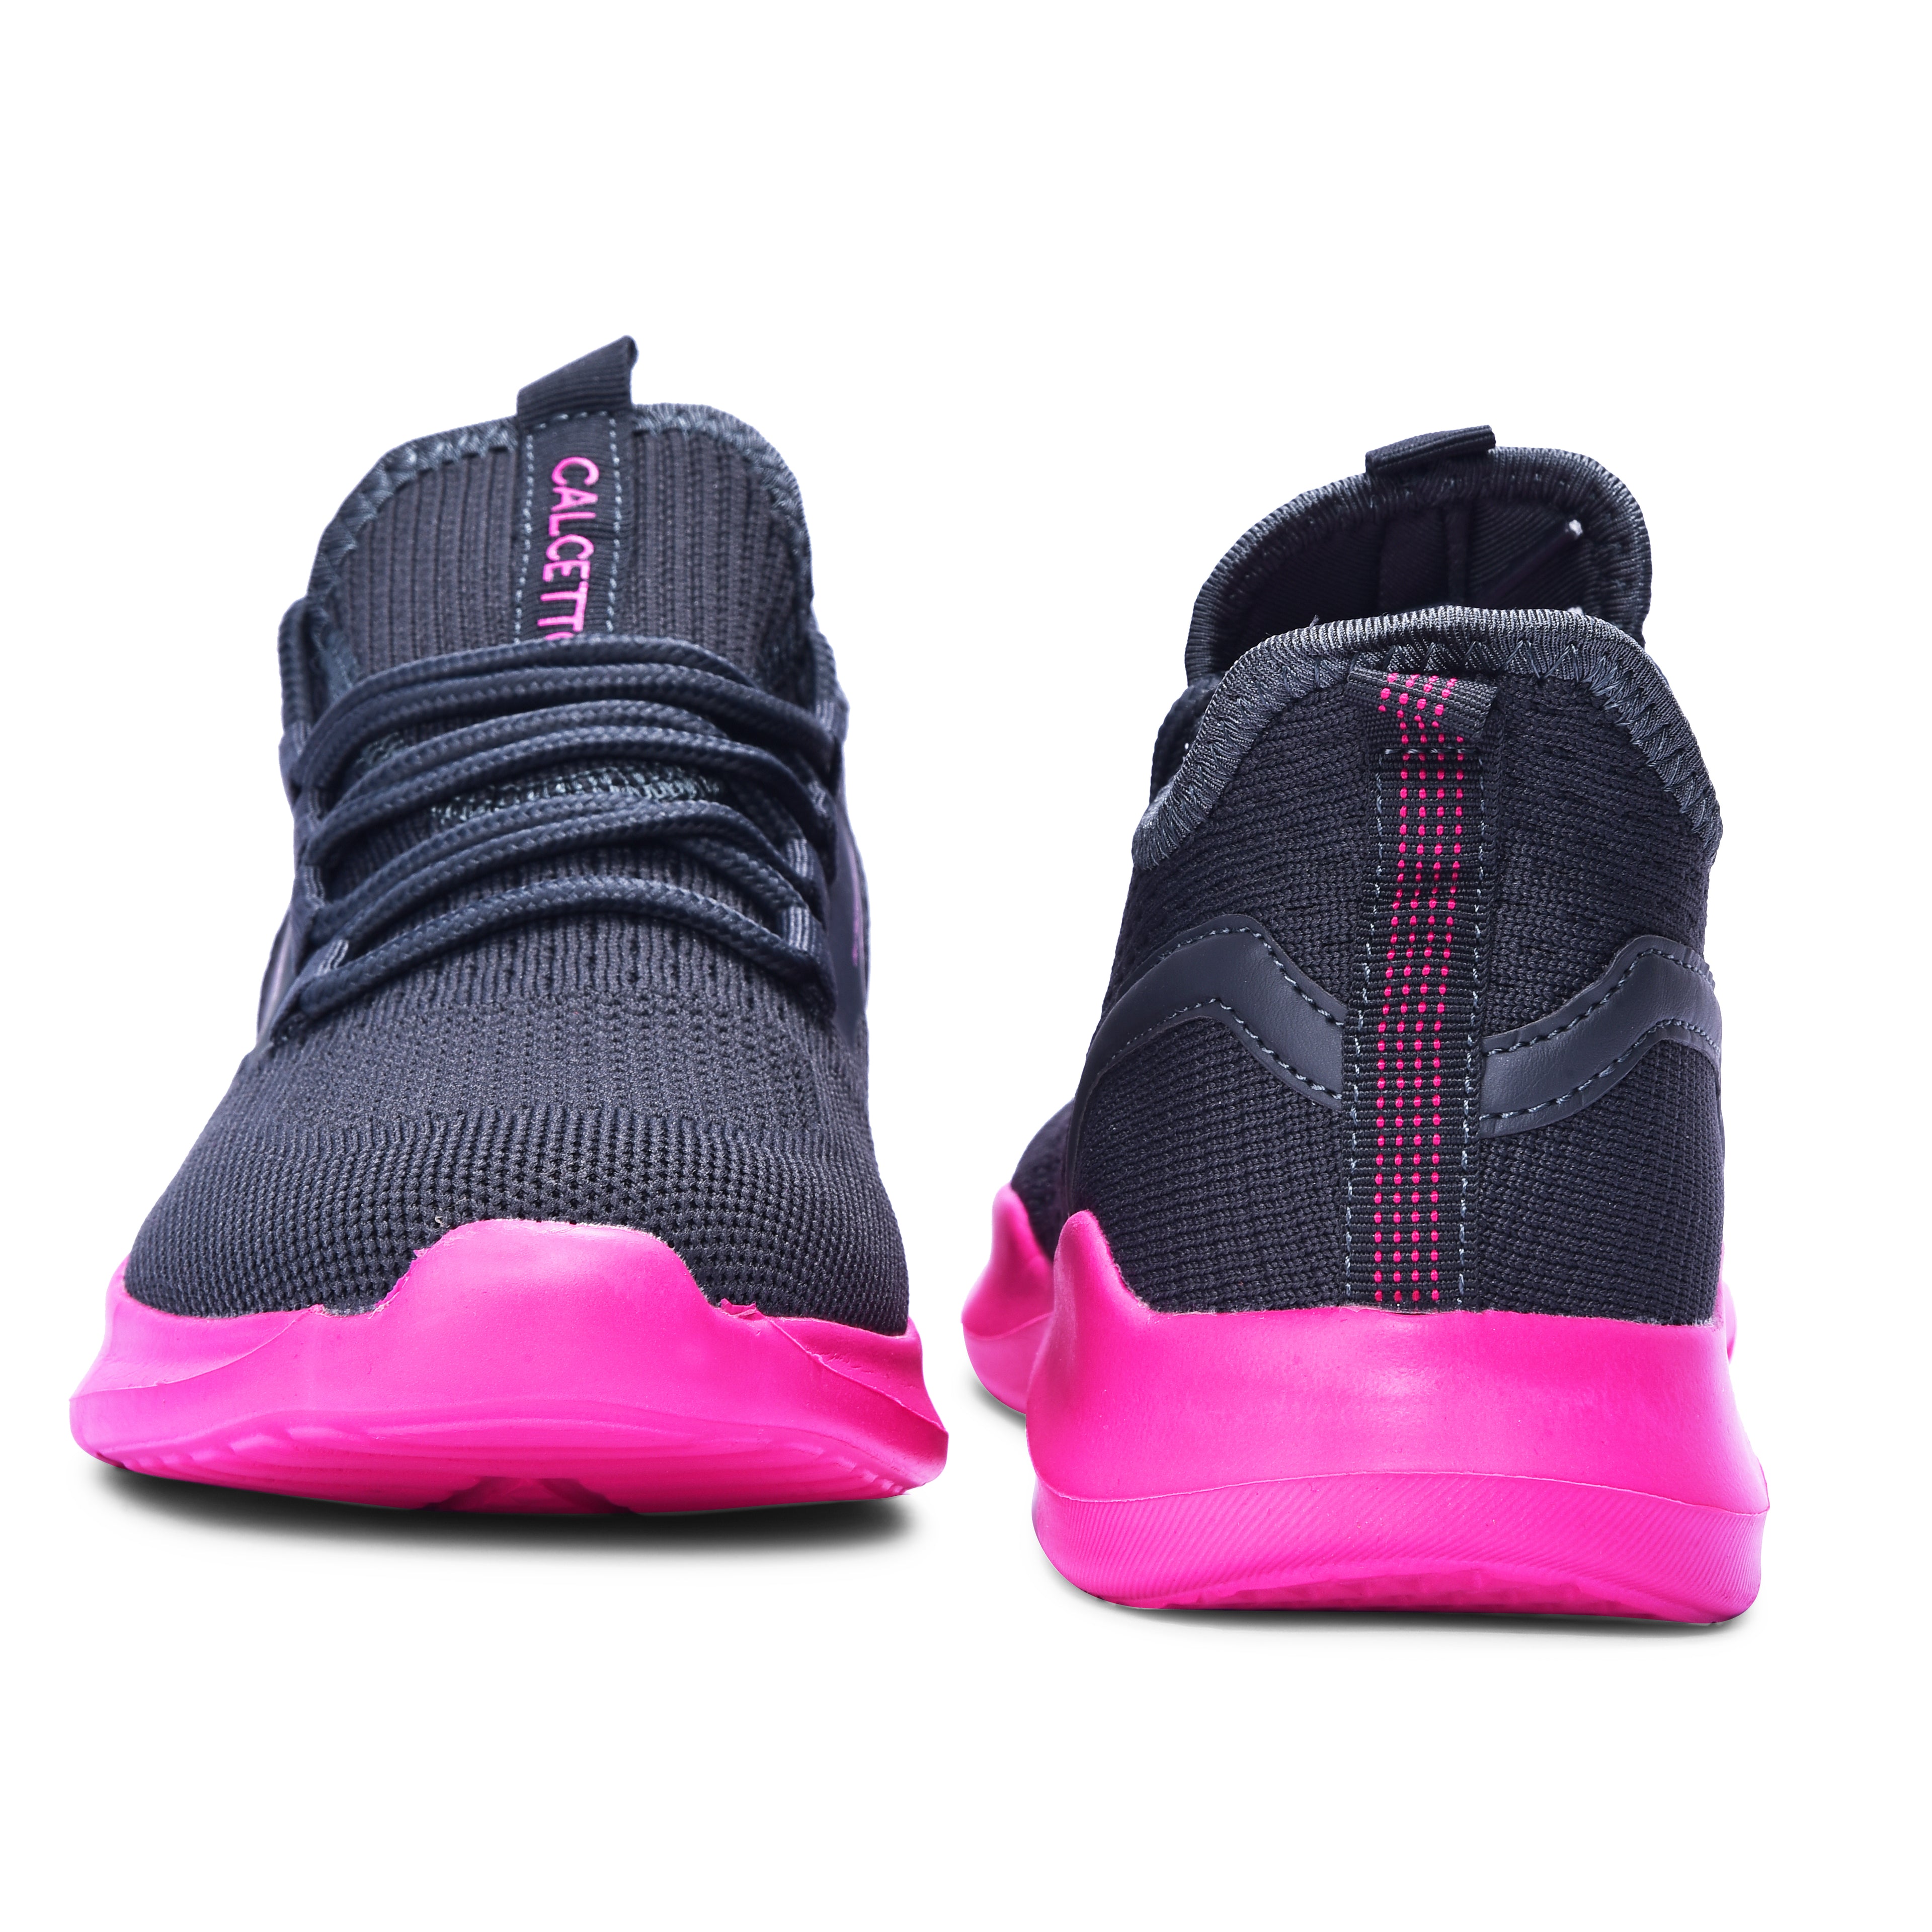 Calcetto CLT-9824 D Grey Fushia Casual Shoe For Women